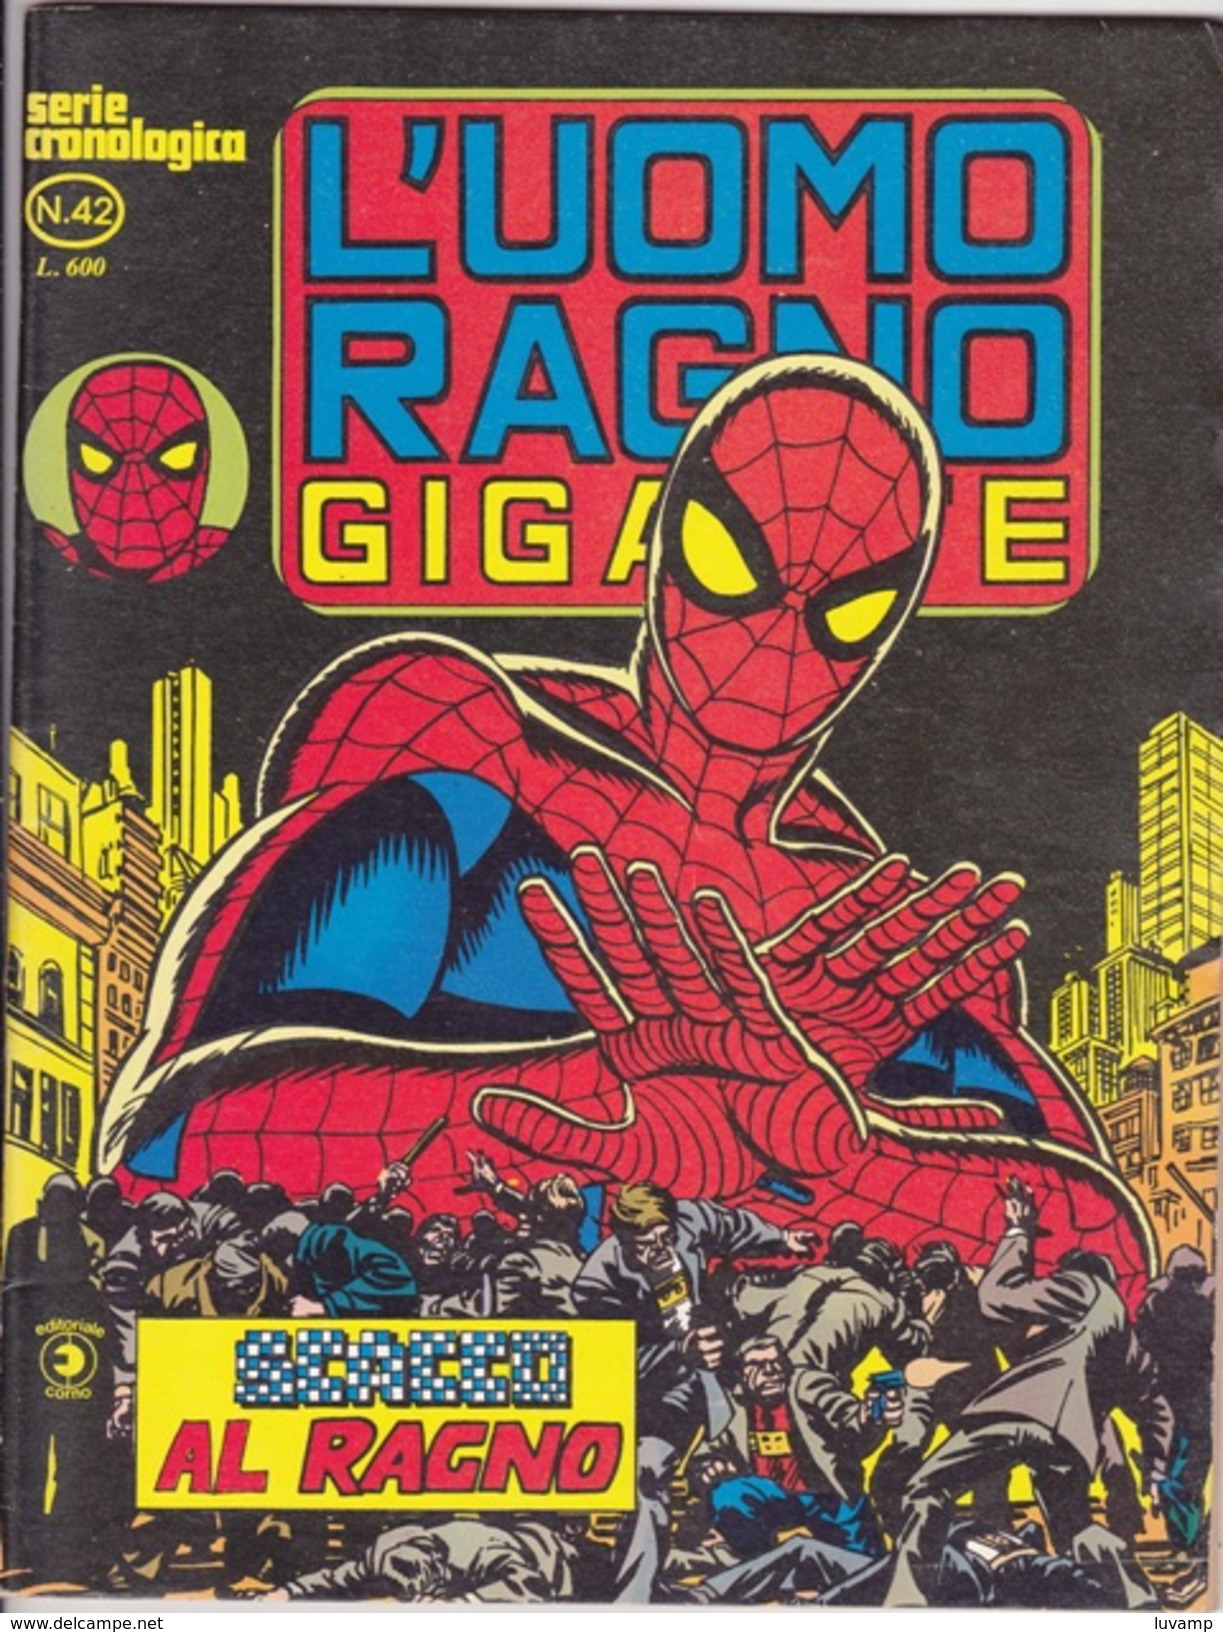 L'UOMO RAGNO GIGANTE -Serie Cronologica - Editore CORNO -N. 42 (240912) - Spiderman